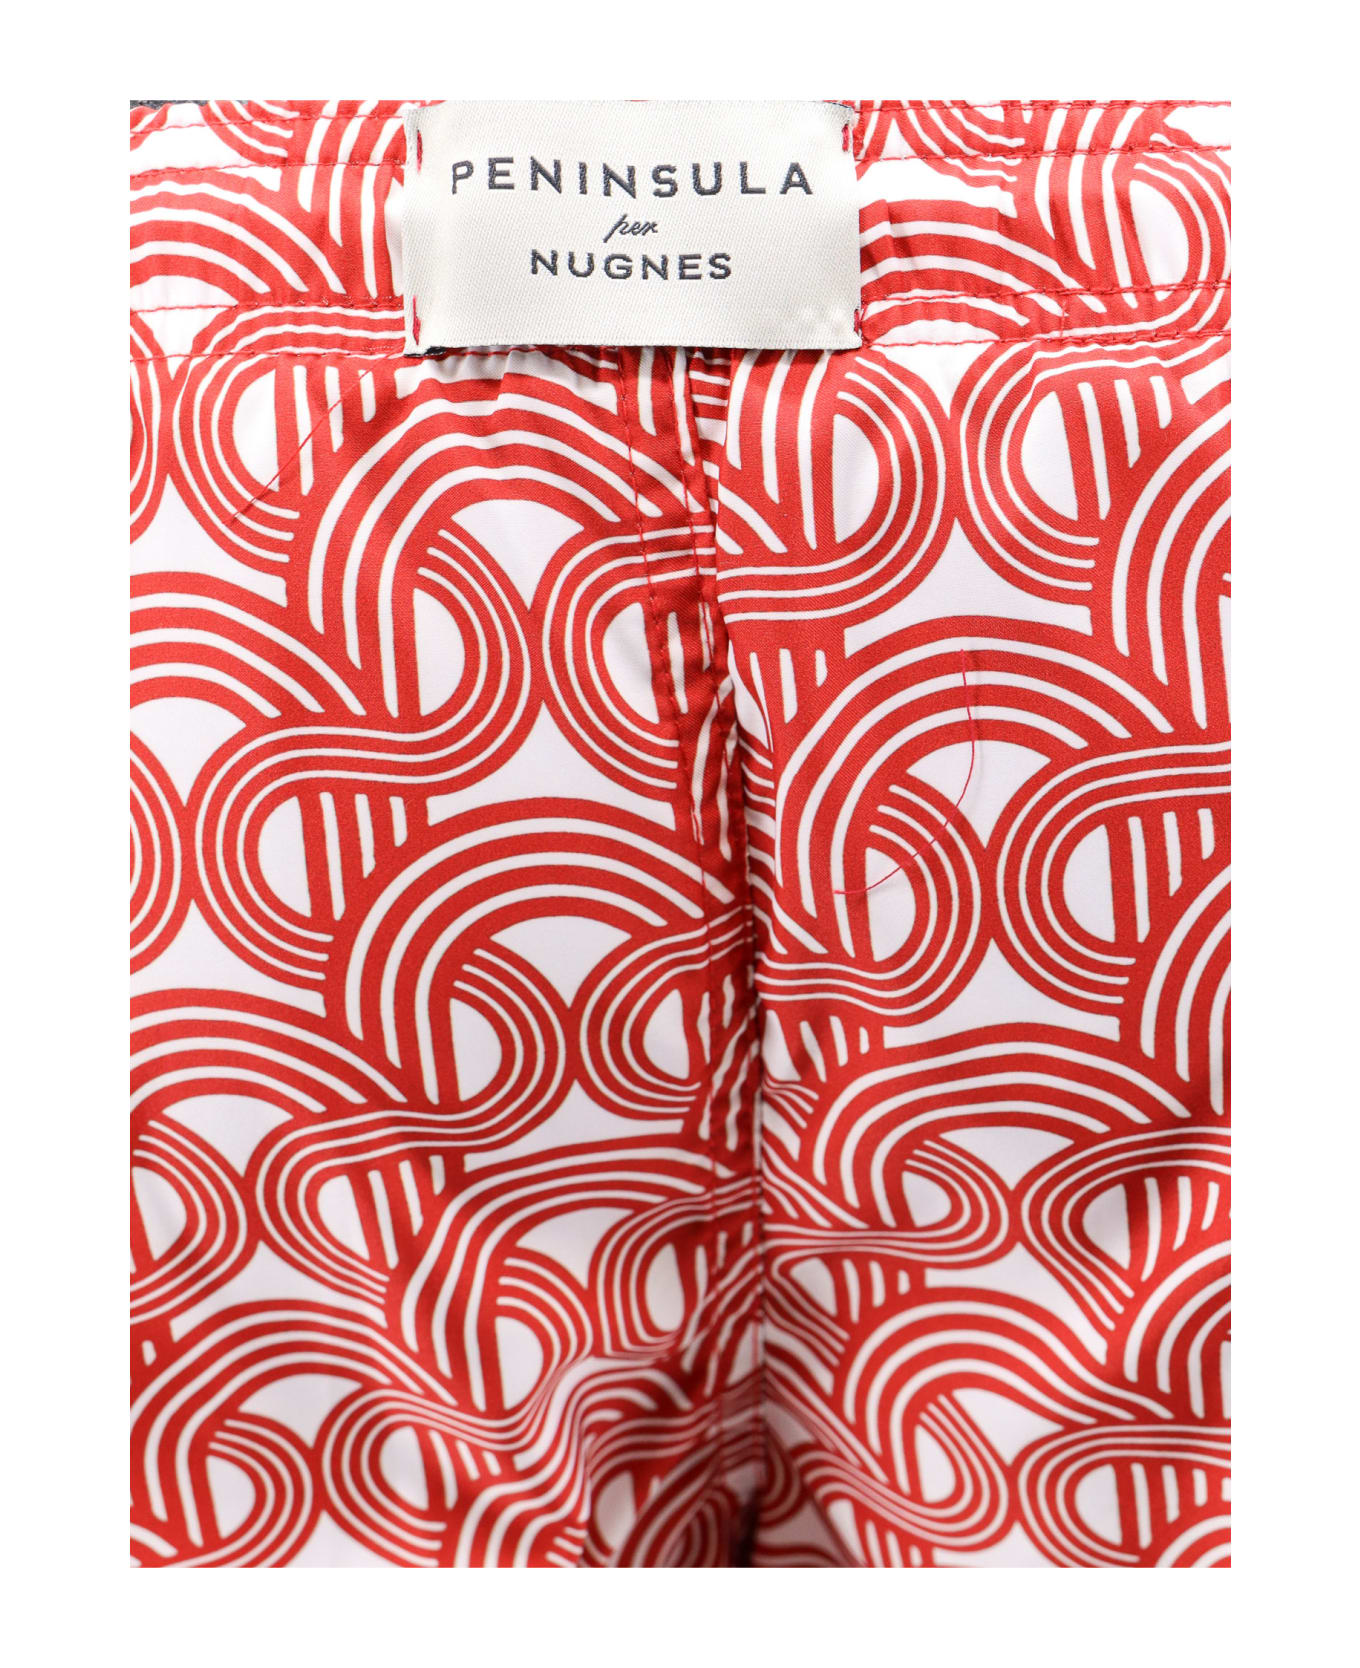 Peninsula Swimwear Swim Shorts - Red